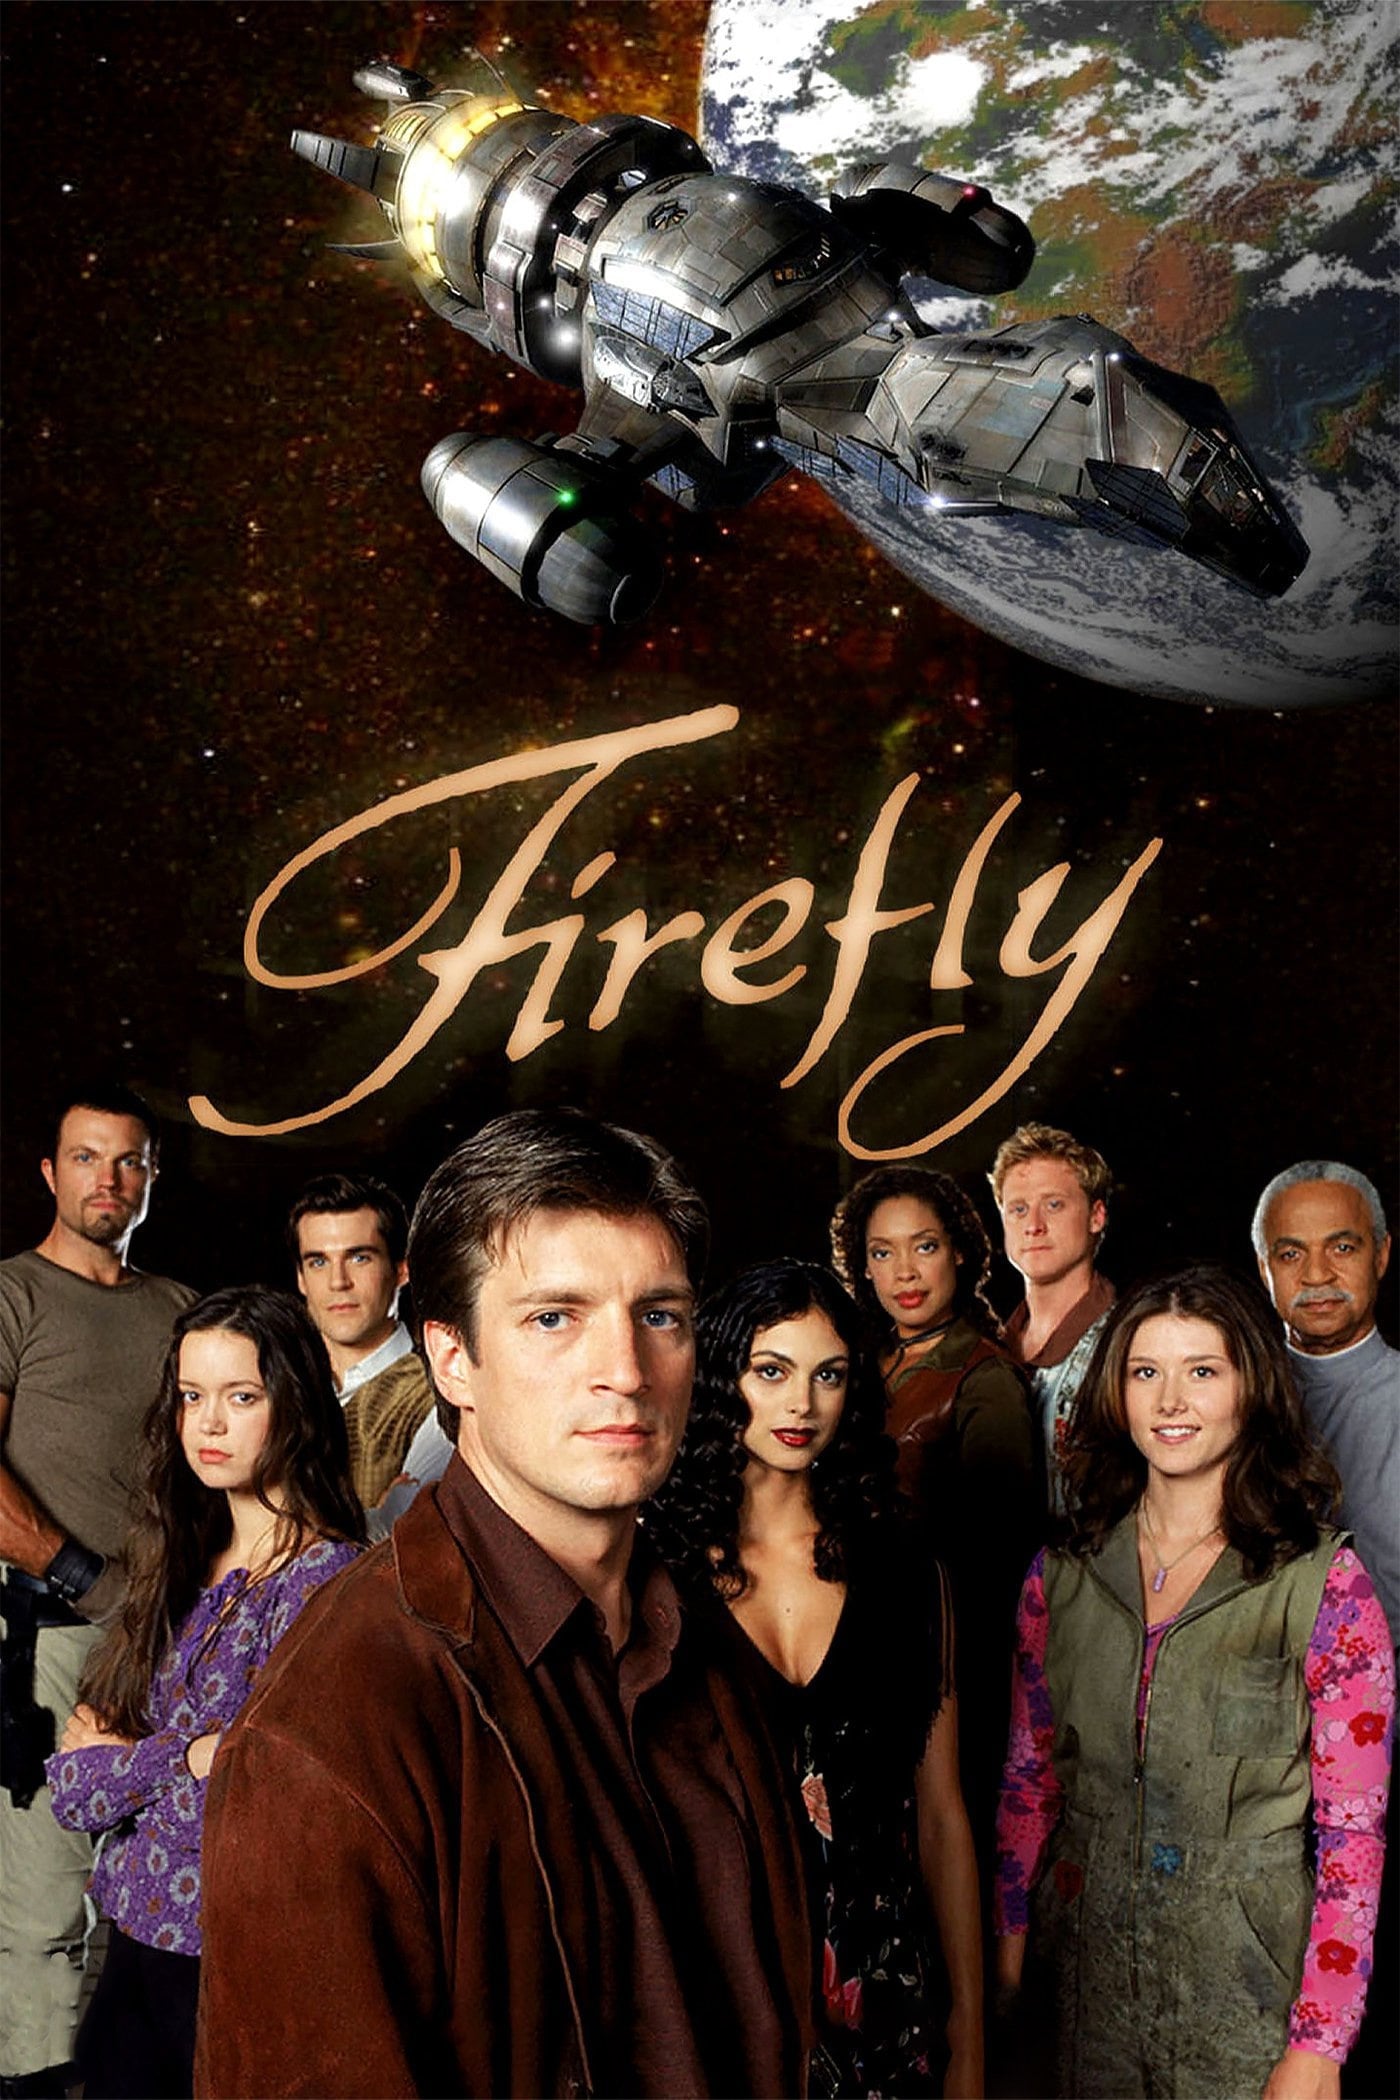 Plakát pro film “Firefly”